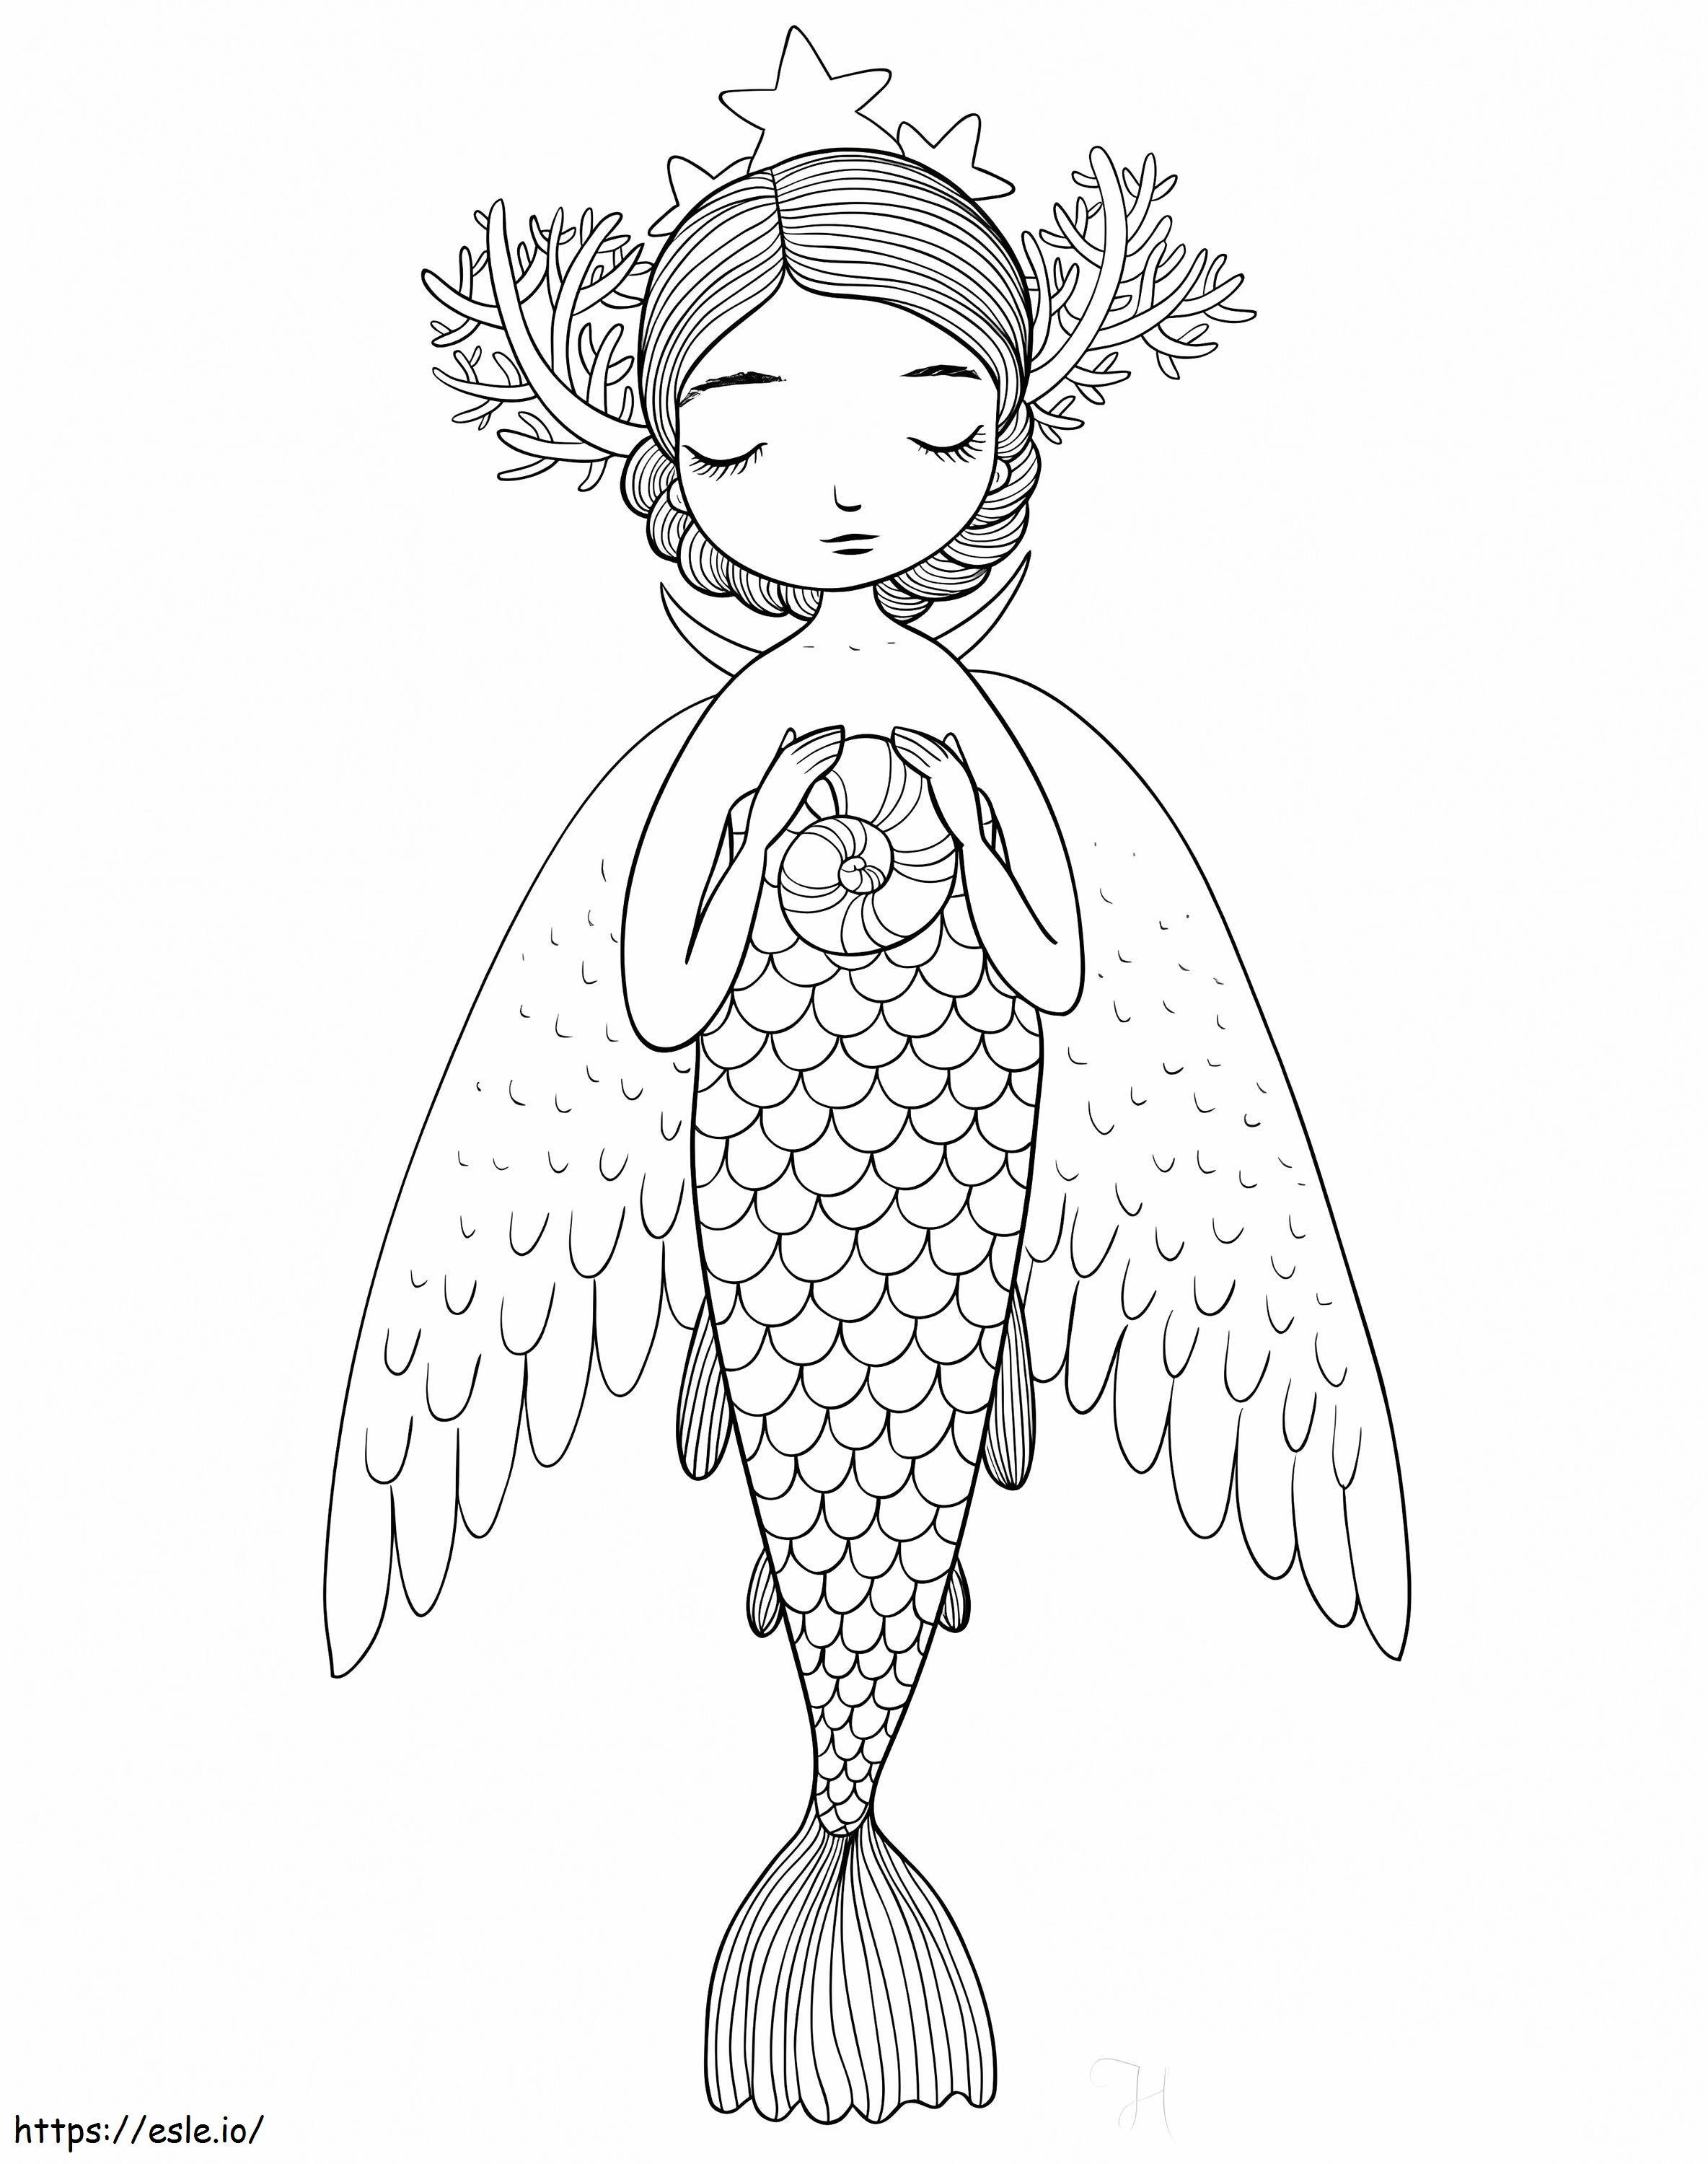 Angel Mermaid coloring page